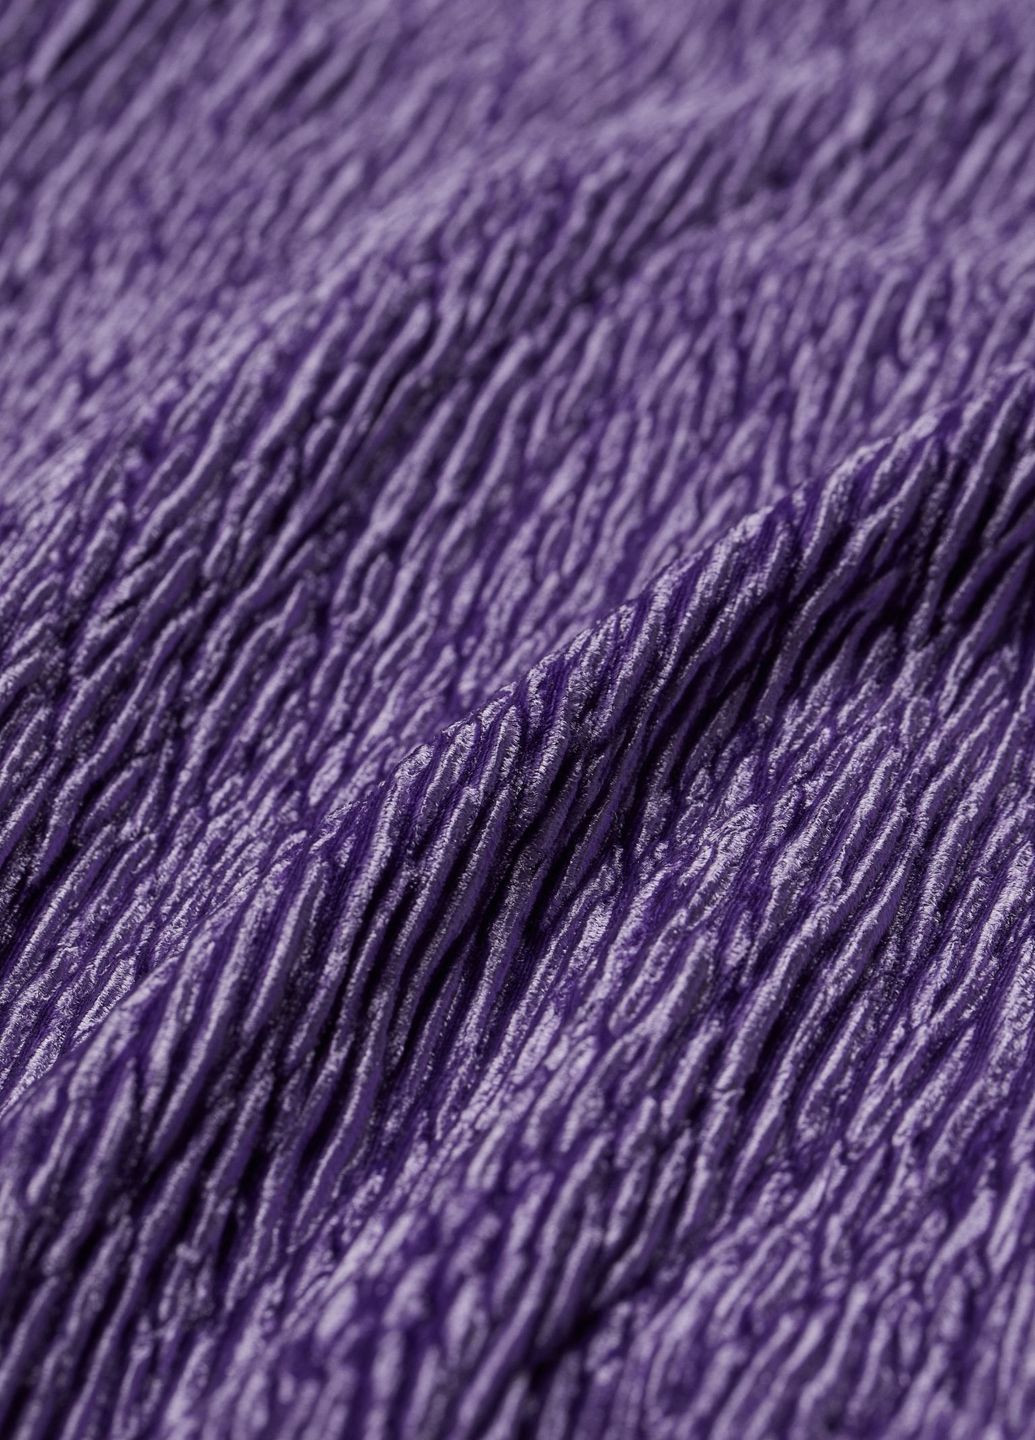 Фиолетовое коктейльное платье велюр H&M однотонное